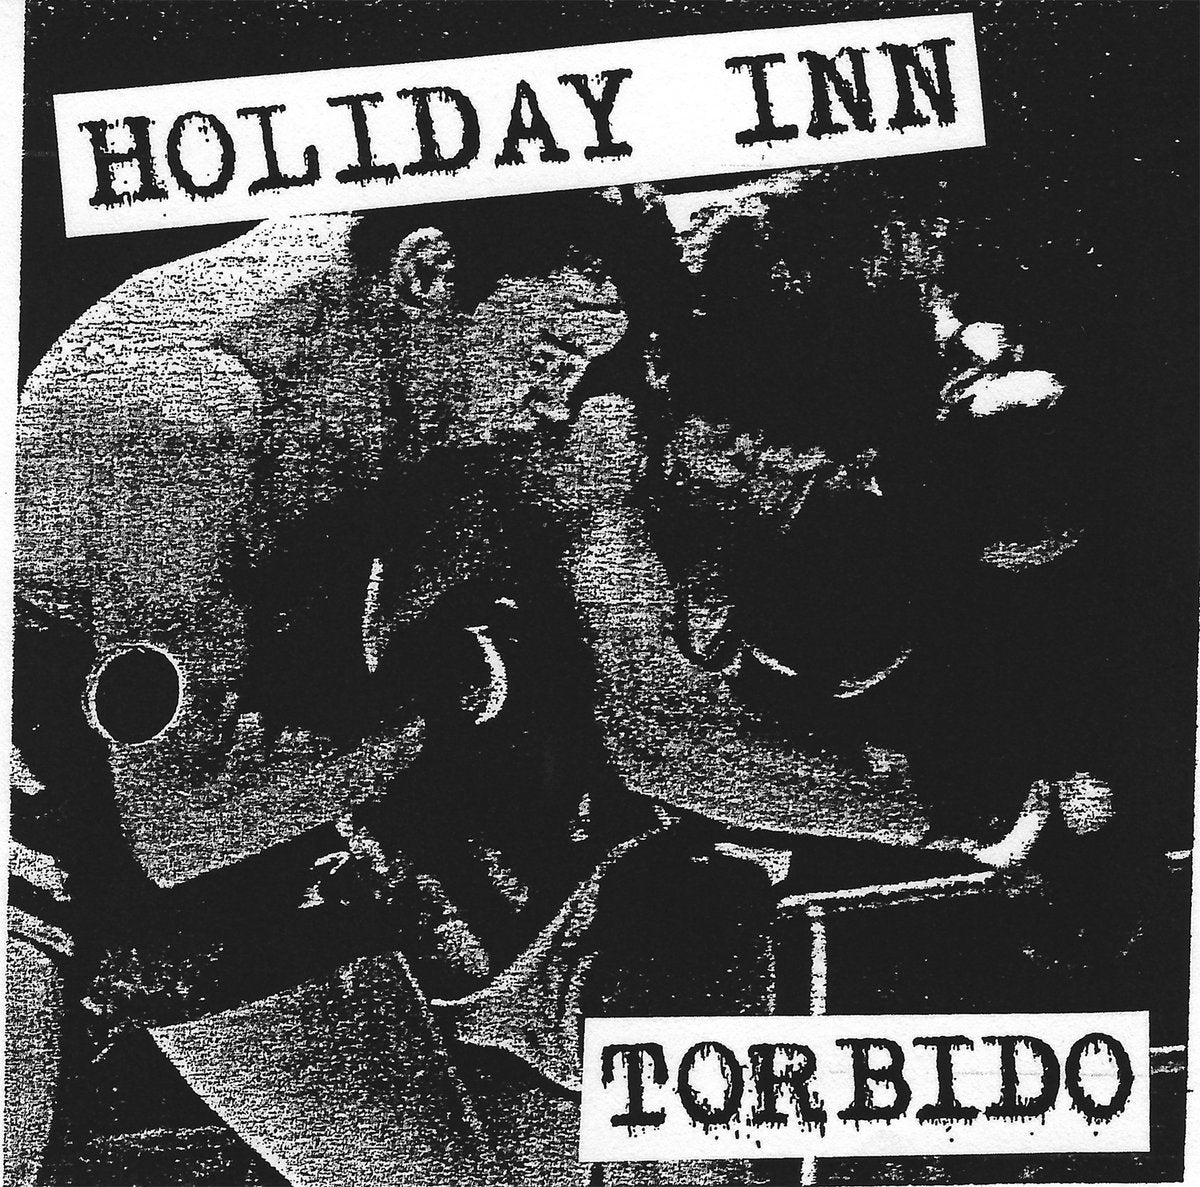 Holiday Inn - Torbido LP